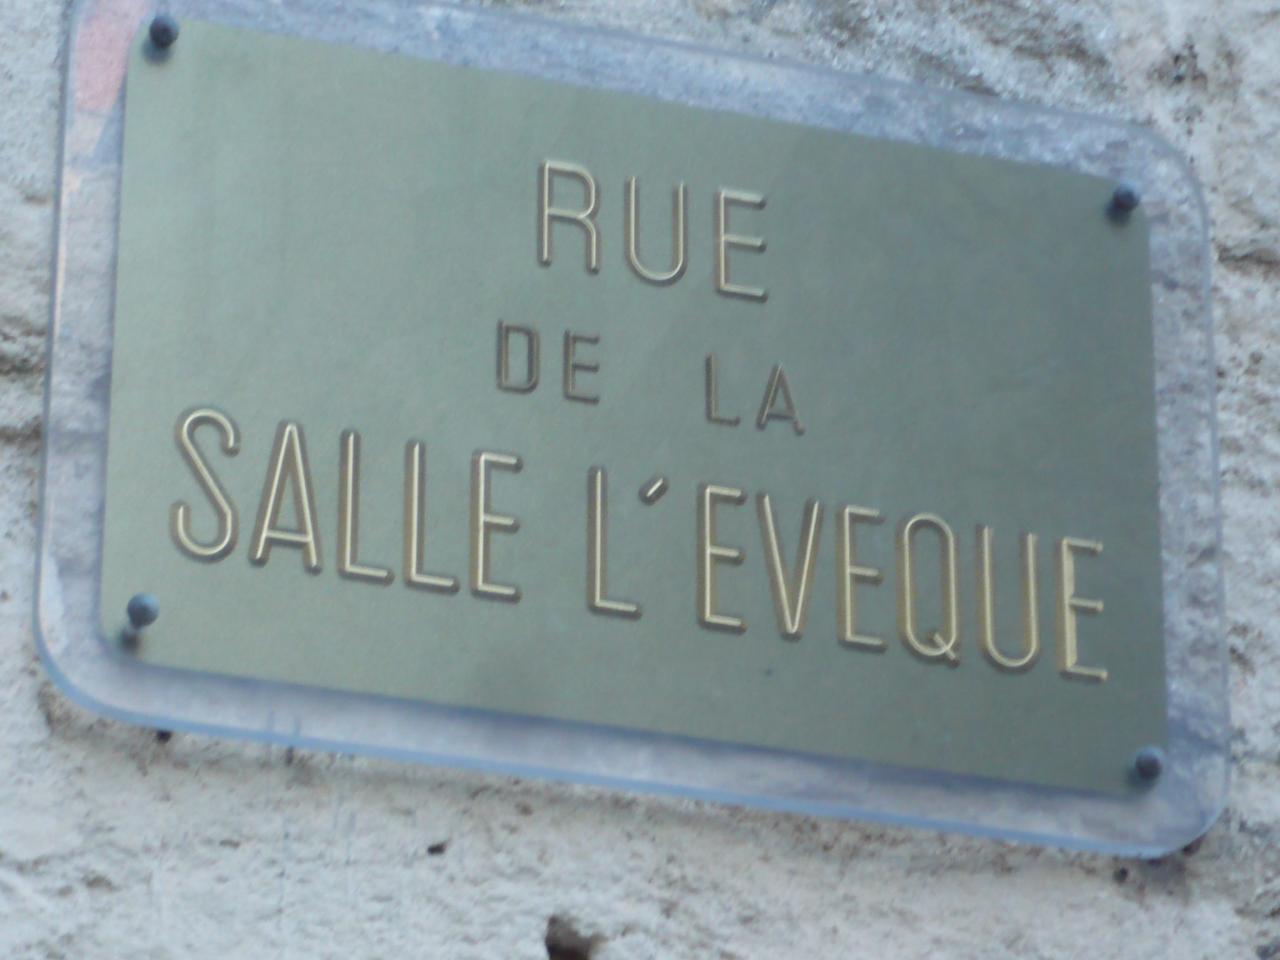 Rue de La Salle l'Evèque, Montpellier.